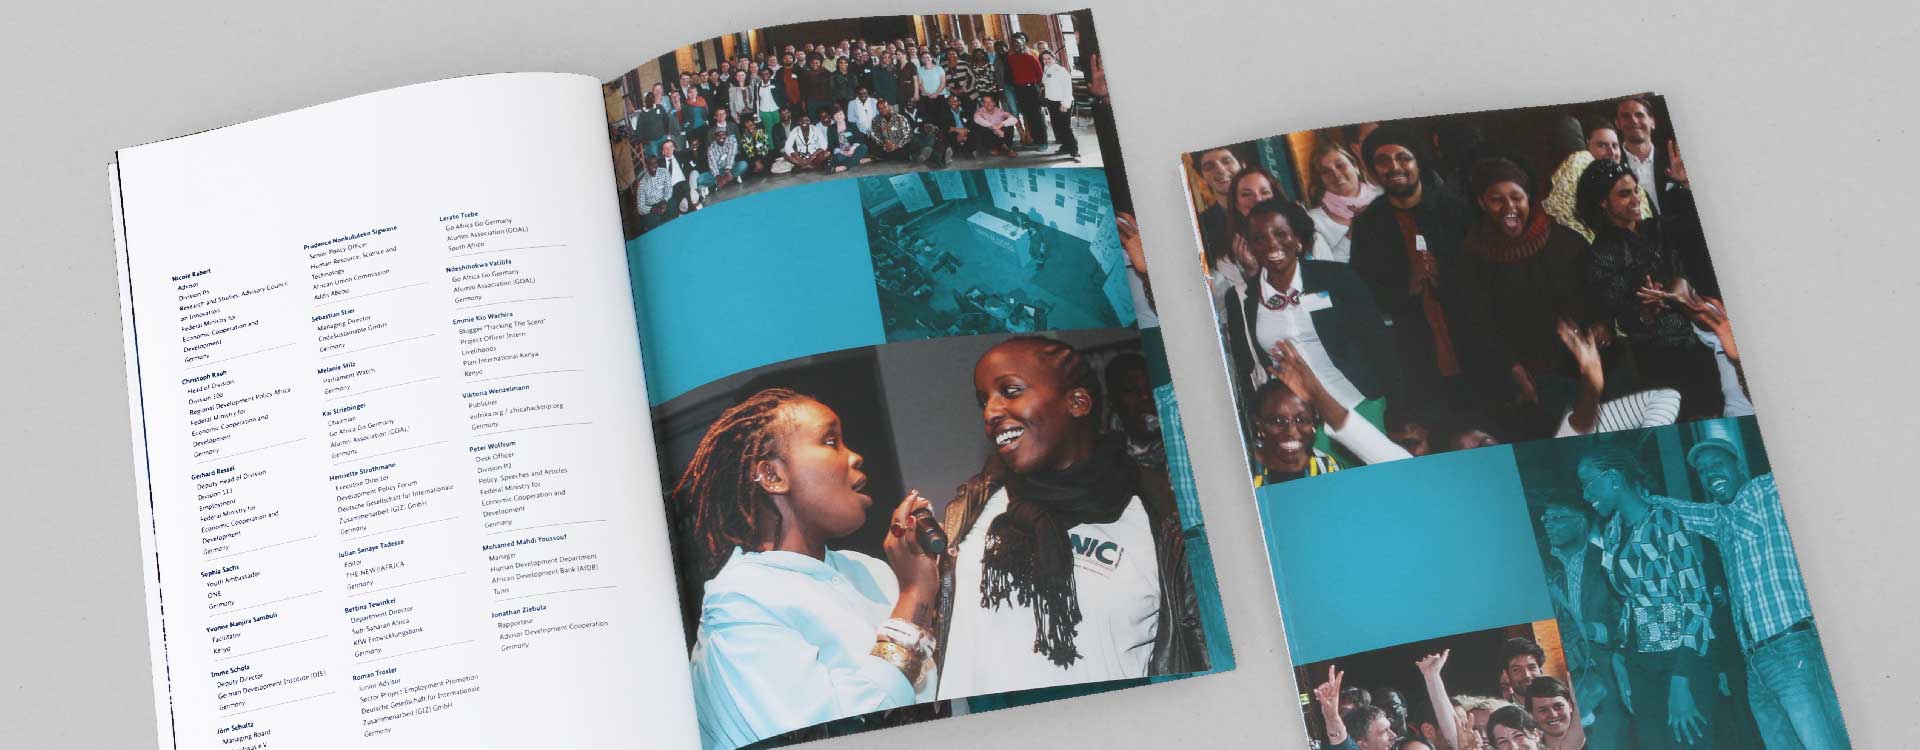 Dokumentation zur vom BMZ veranstalteten Konferenz „Youth in Africa“ im Umspannwerk Kreuzberg, Berlin; Design: Kattrin Richter | Büro für Grafikdesign